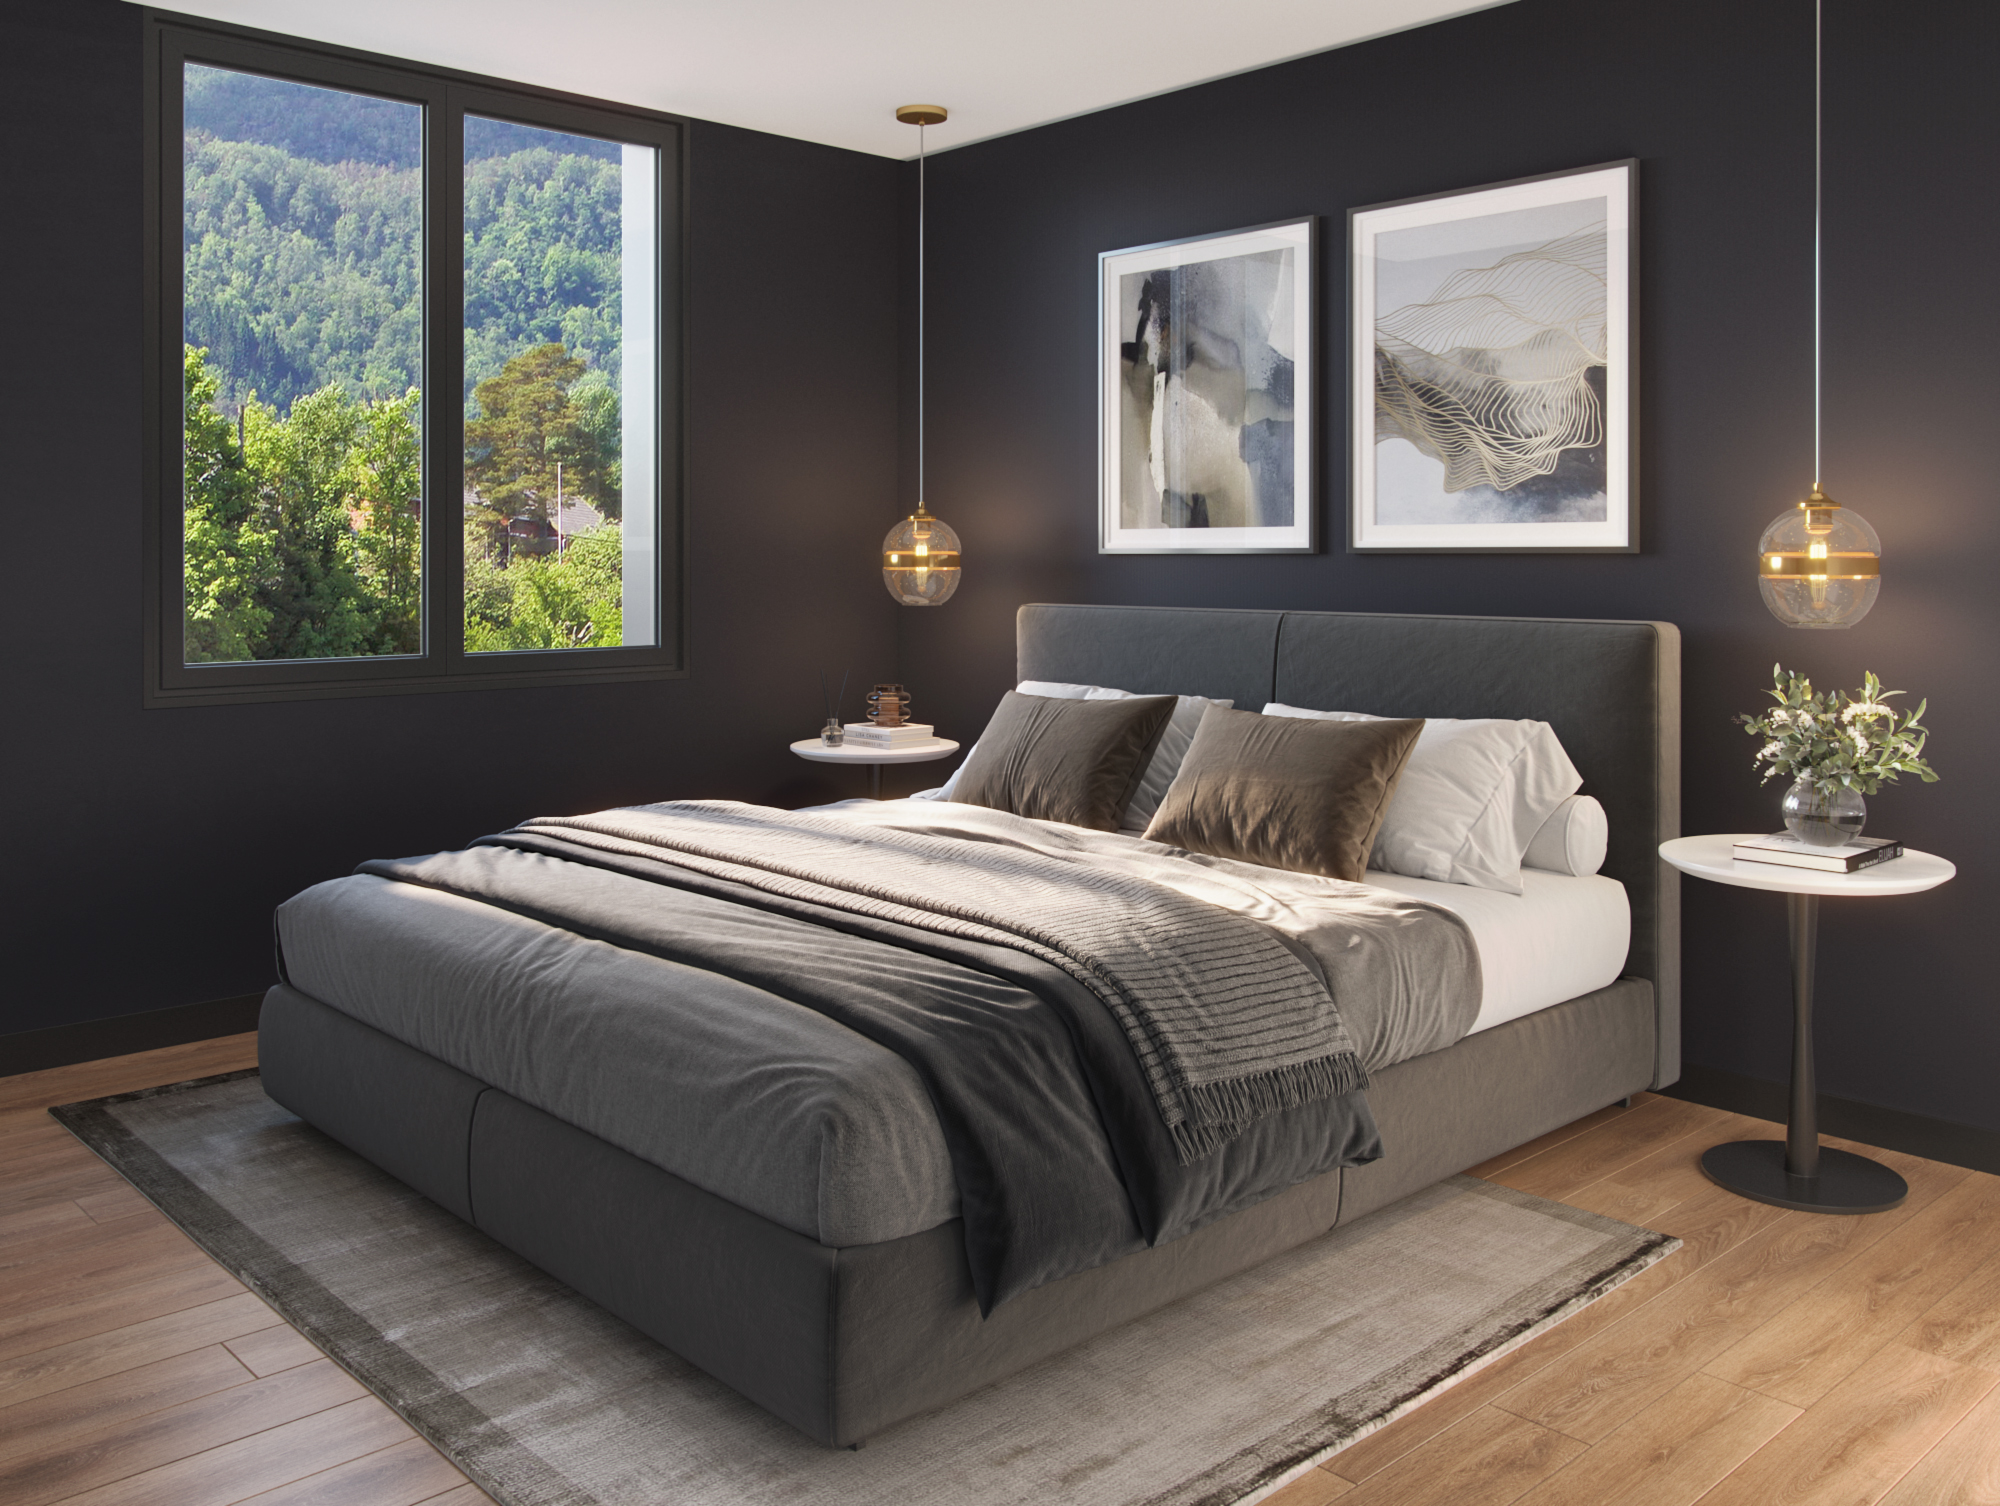 Soverom med nydelig utsikt - moderne stil med teppe og fine bilder